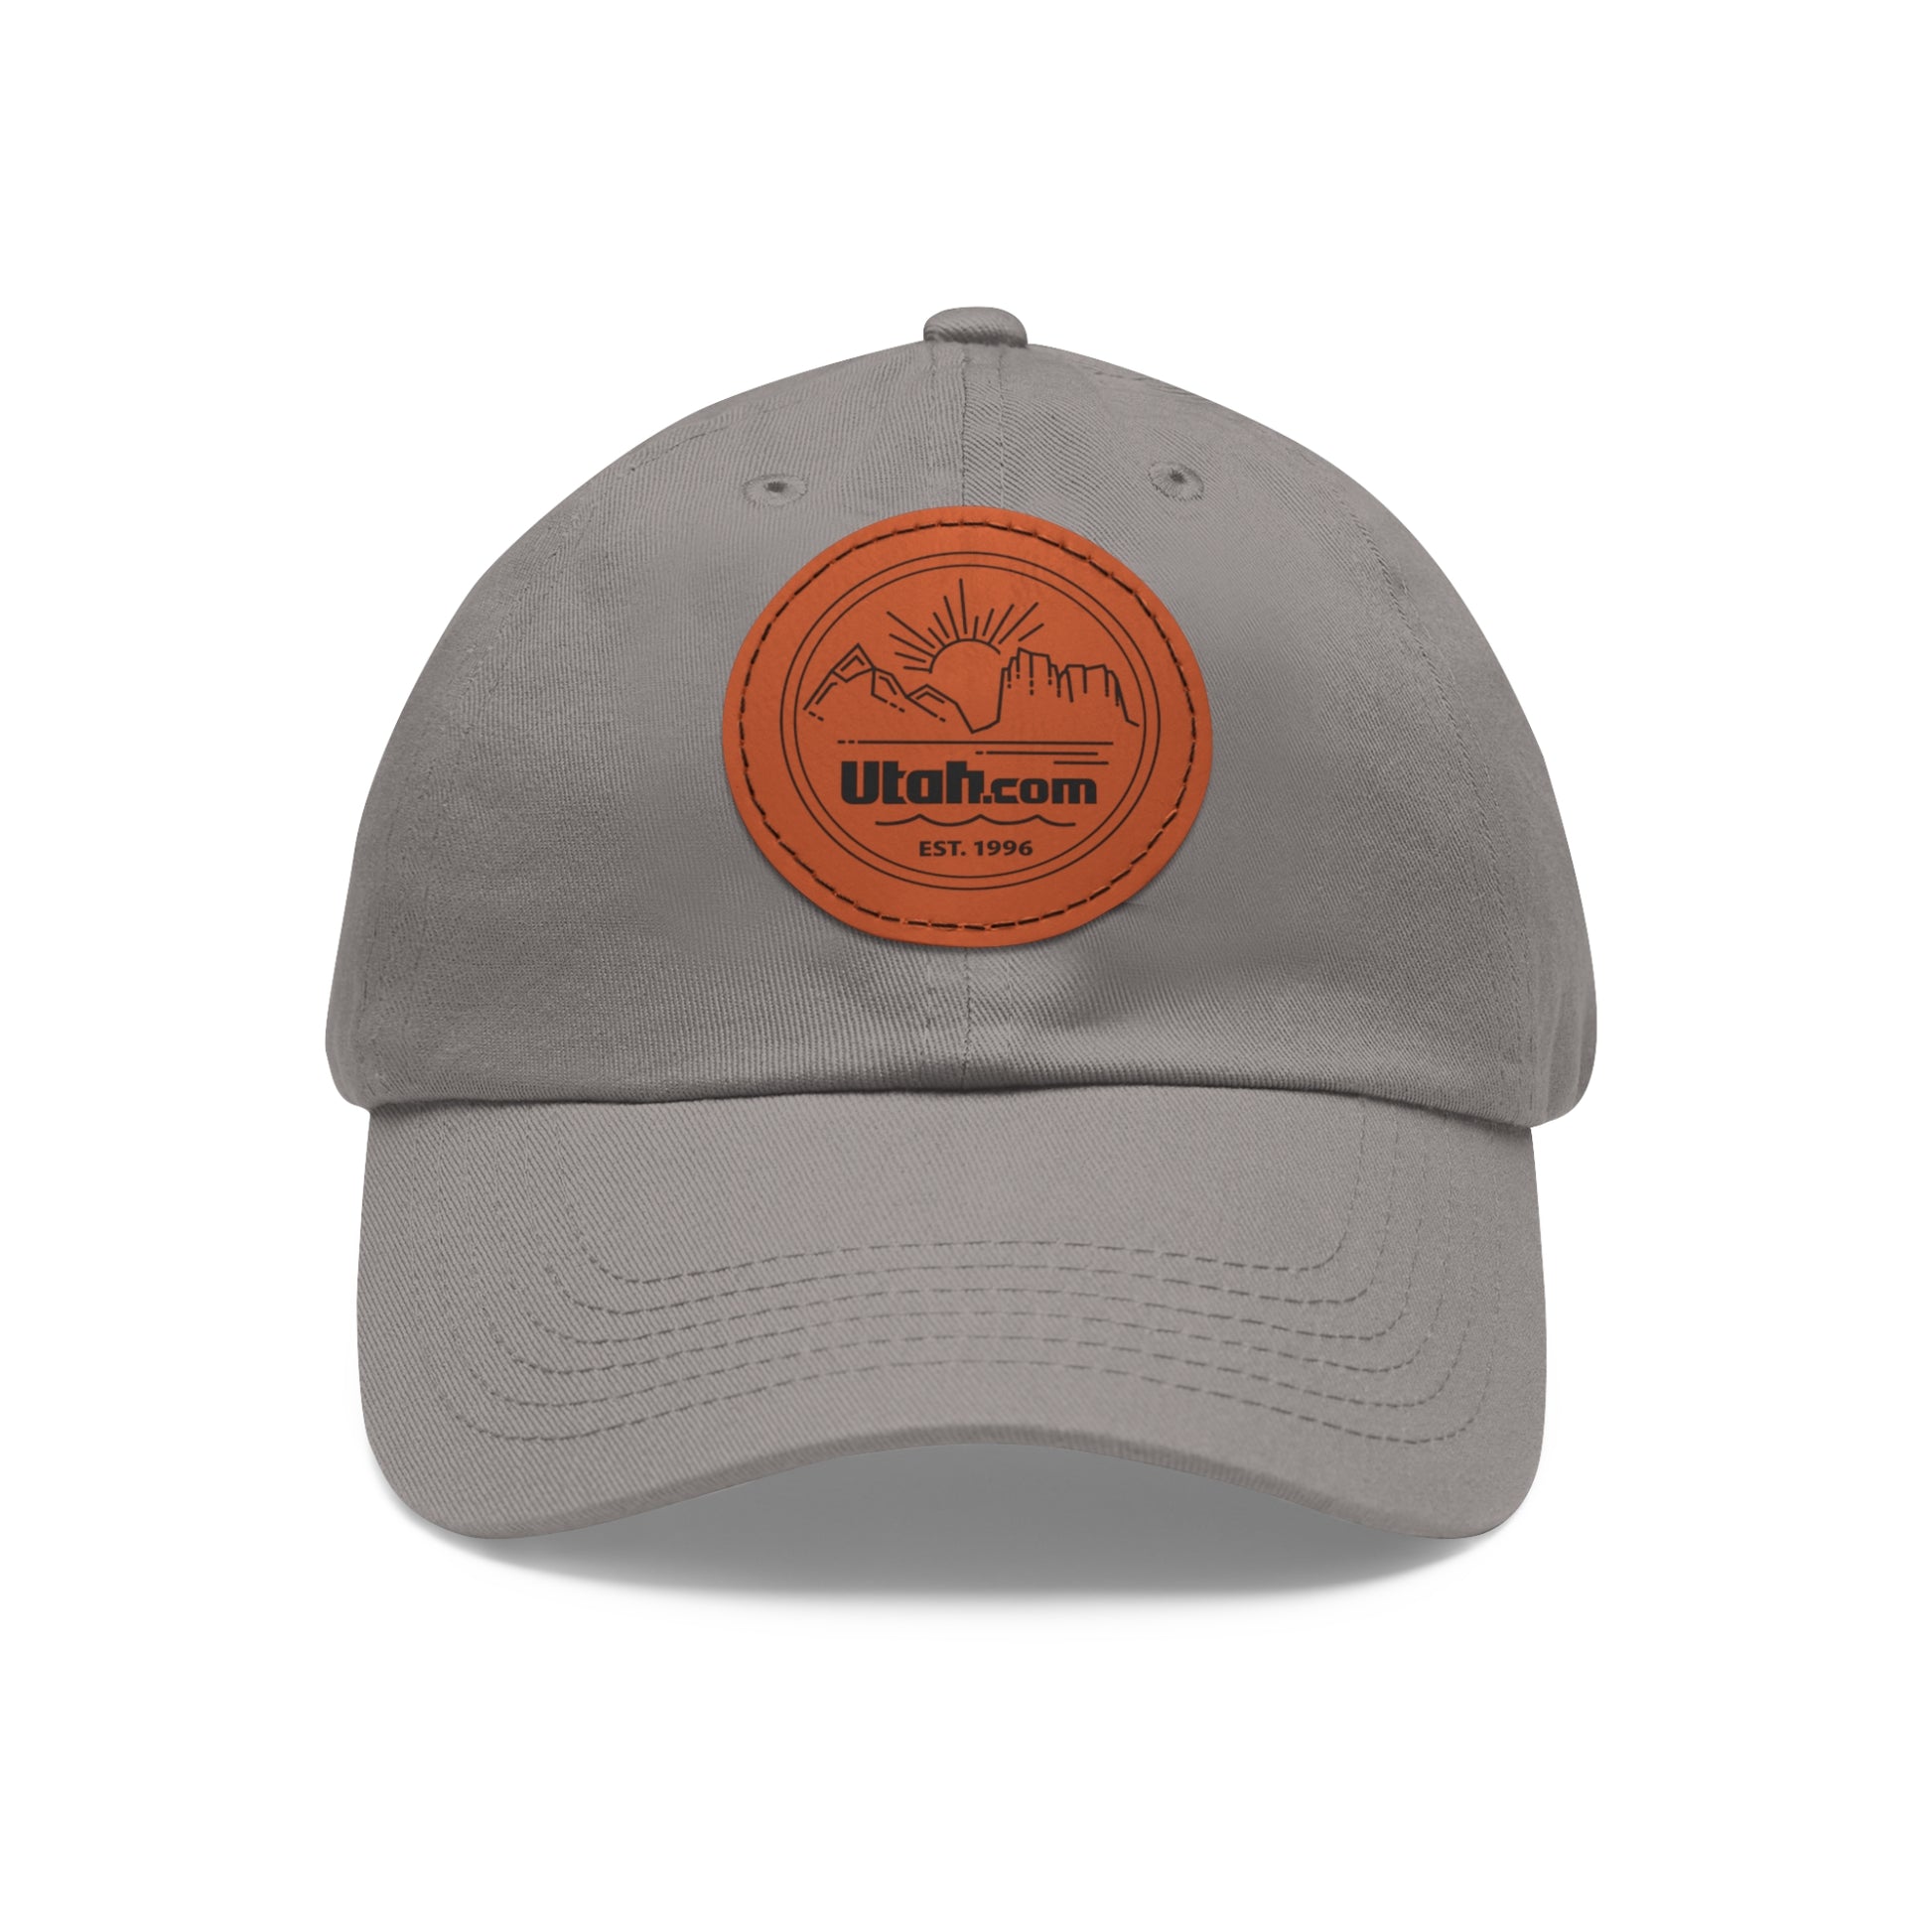 Diverse Utah Leather Patch Hat - Utah.com